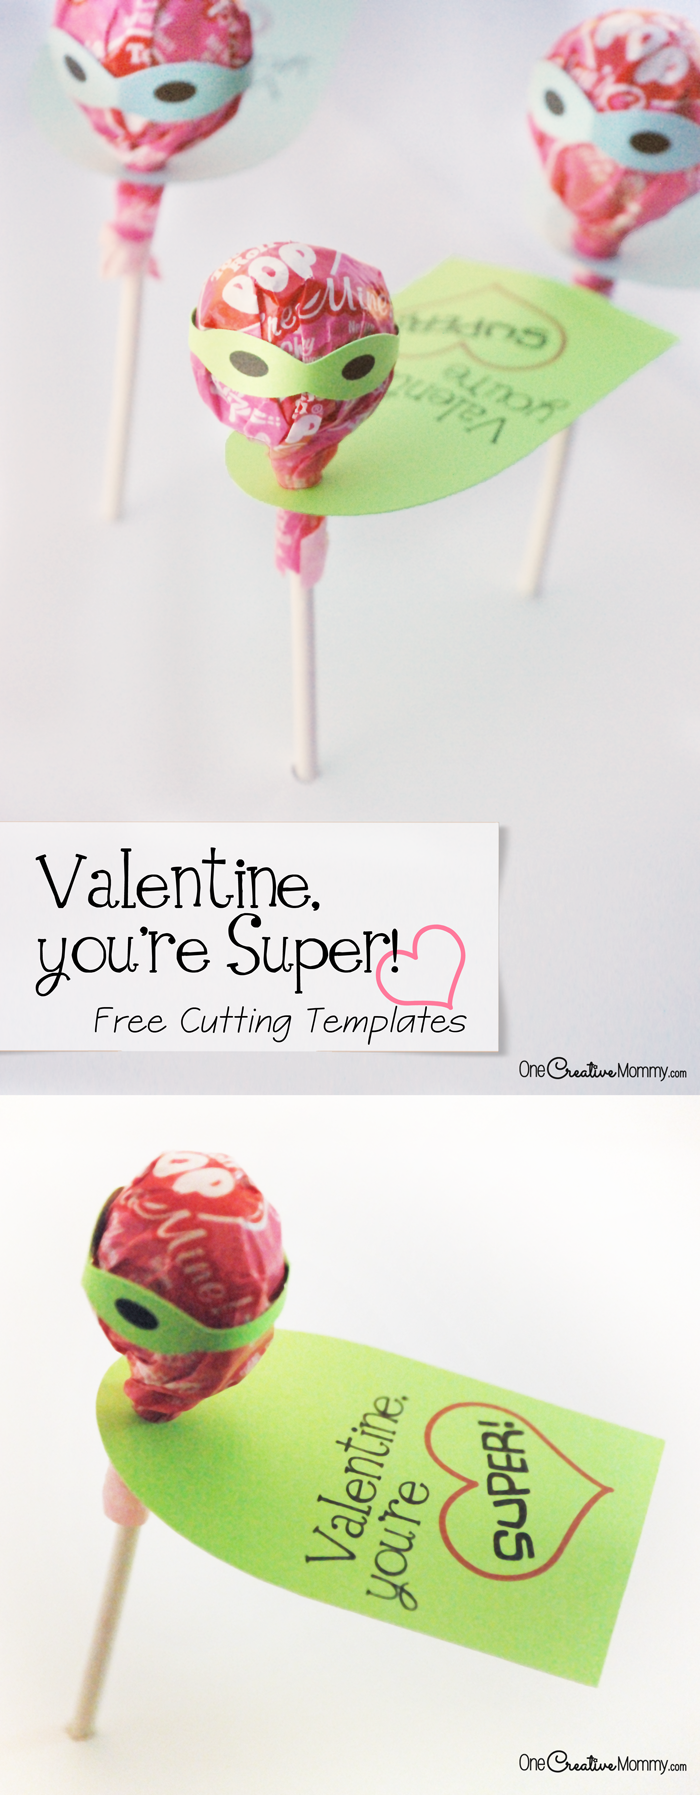 tootsie-pop-super-valentines-free-cutting-templates